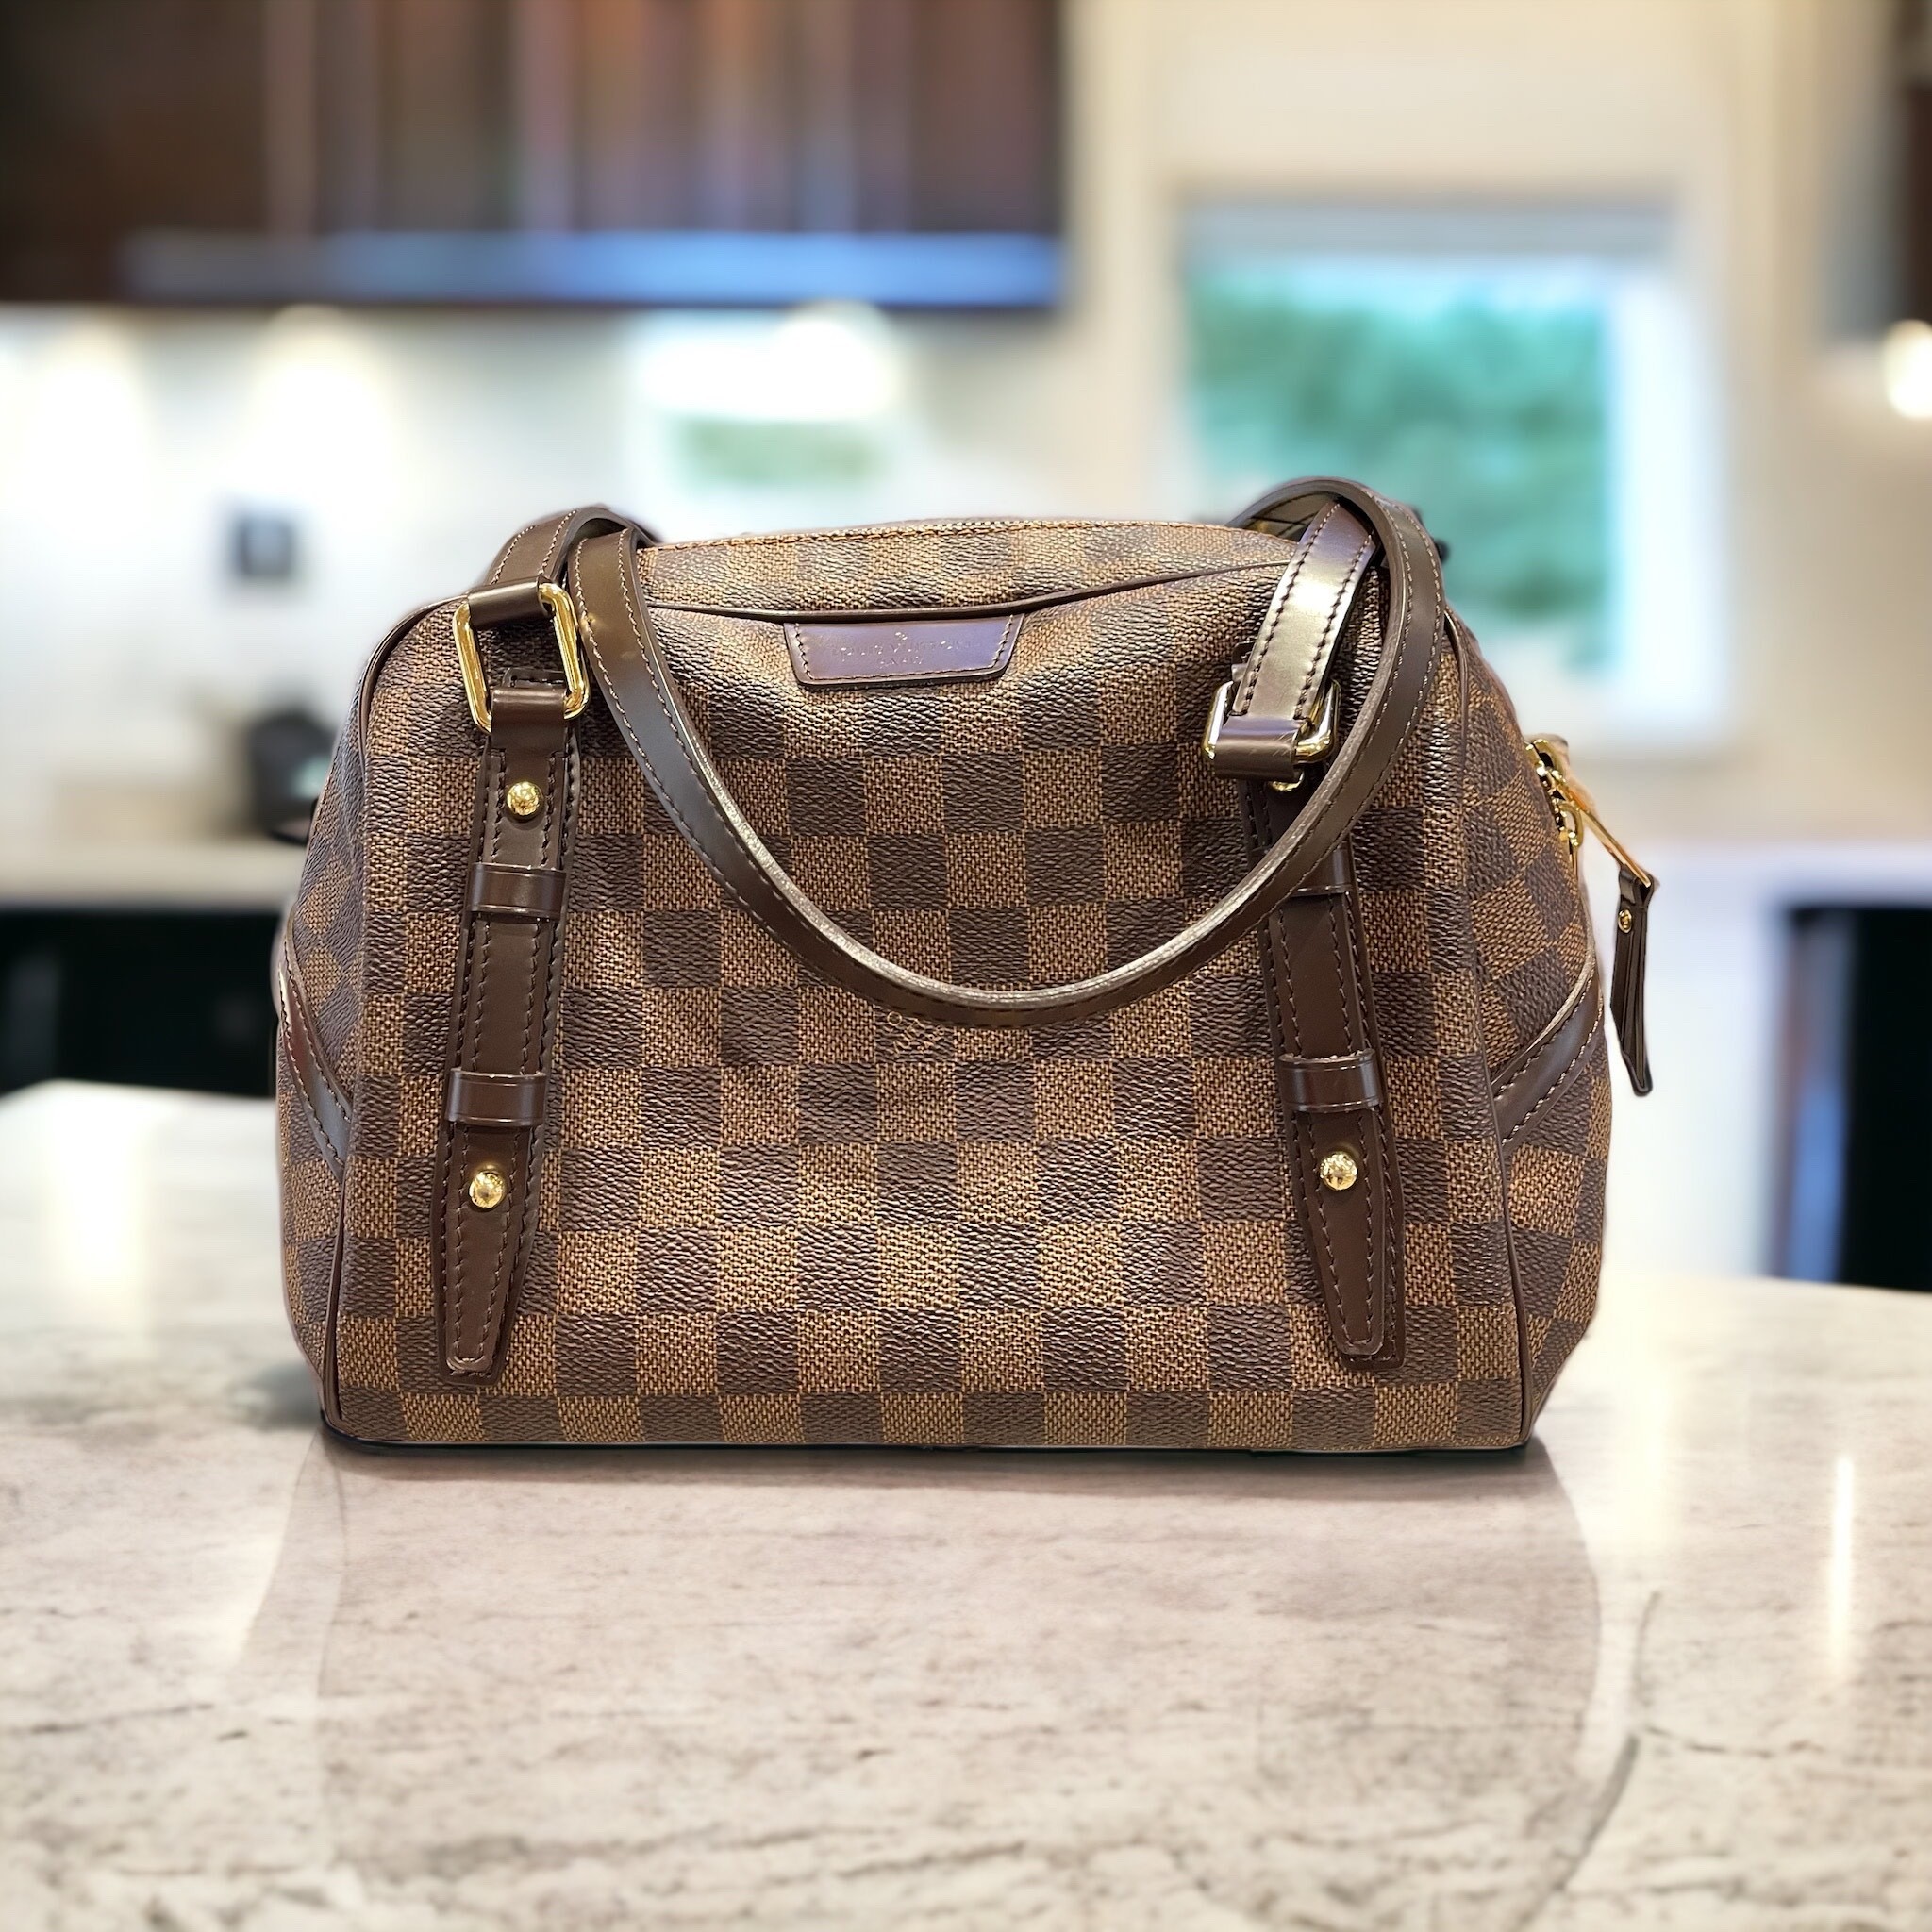 Louis Vuitton Rivington Handbag